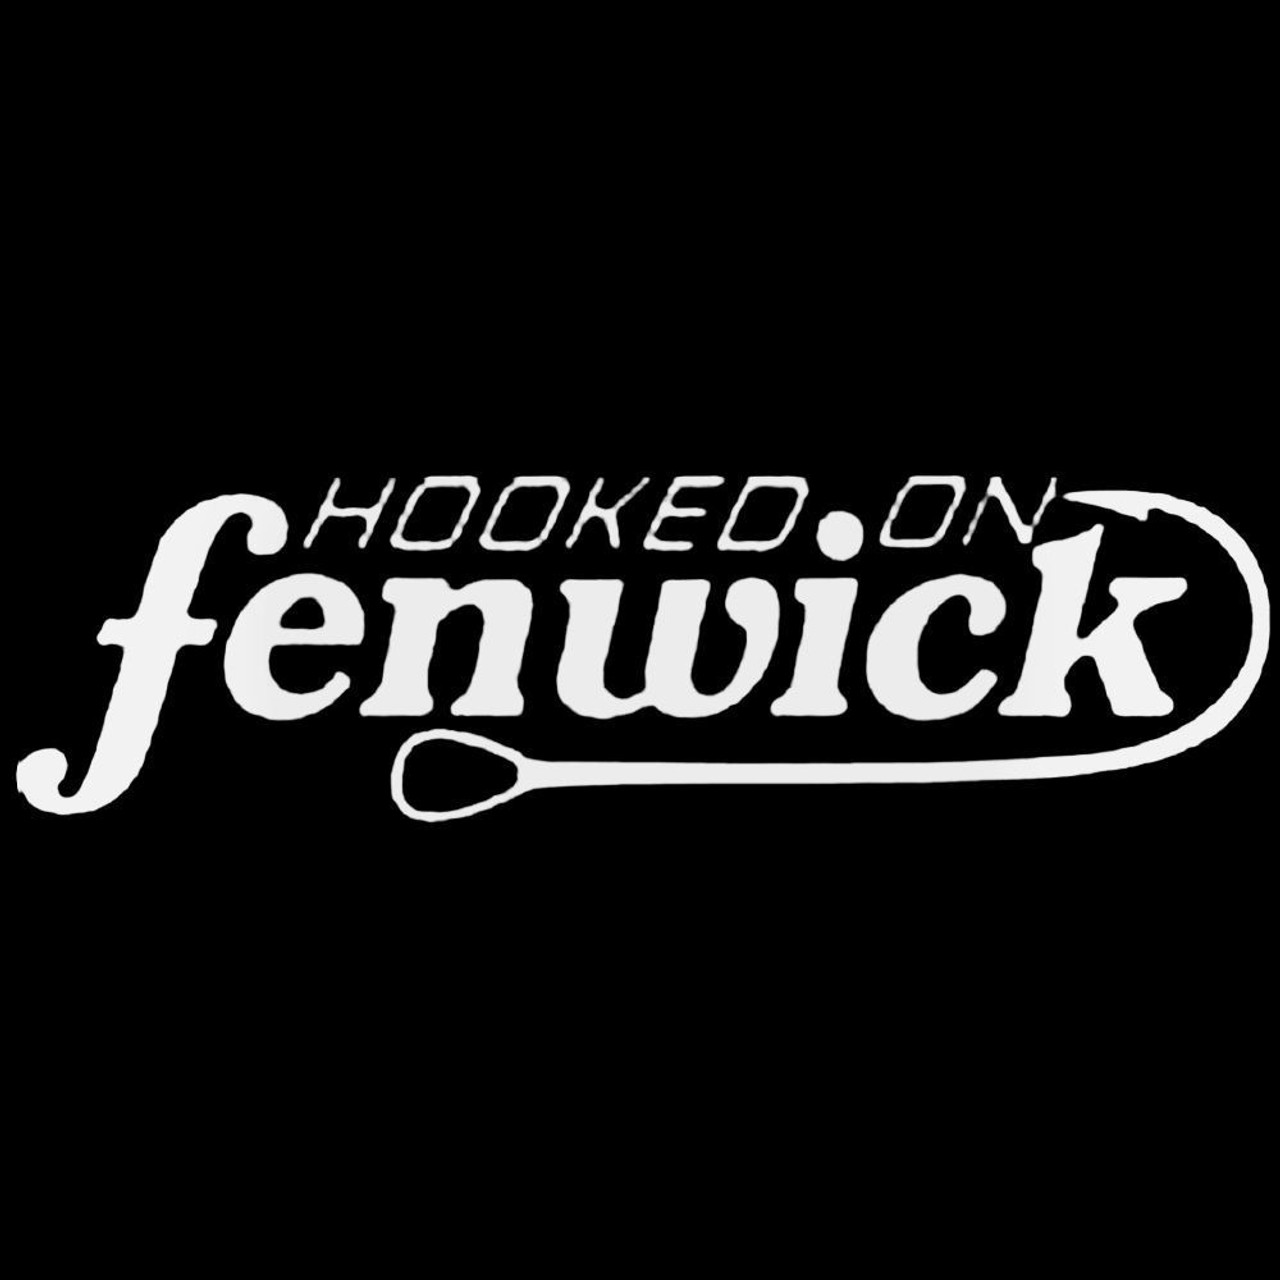 Hooked On Fenwick Fishing Die Cut Decal Sticker